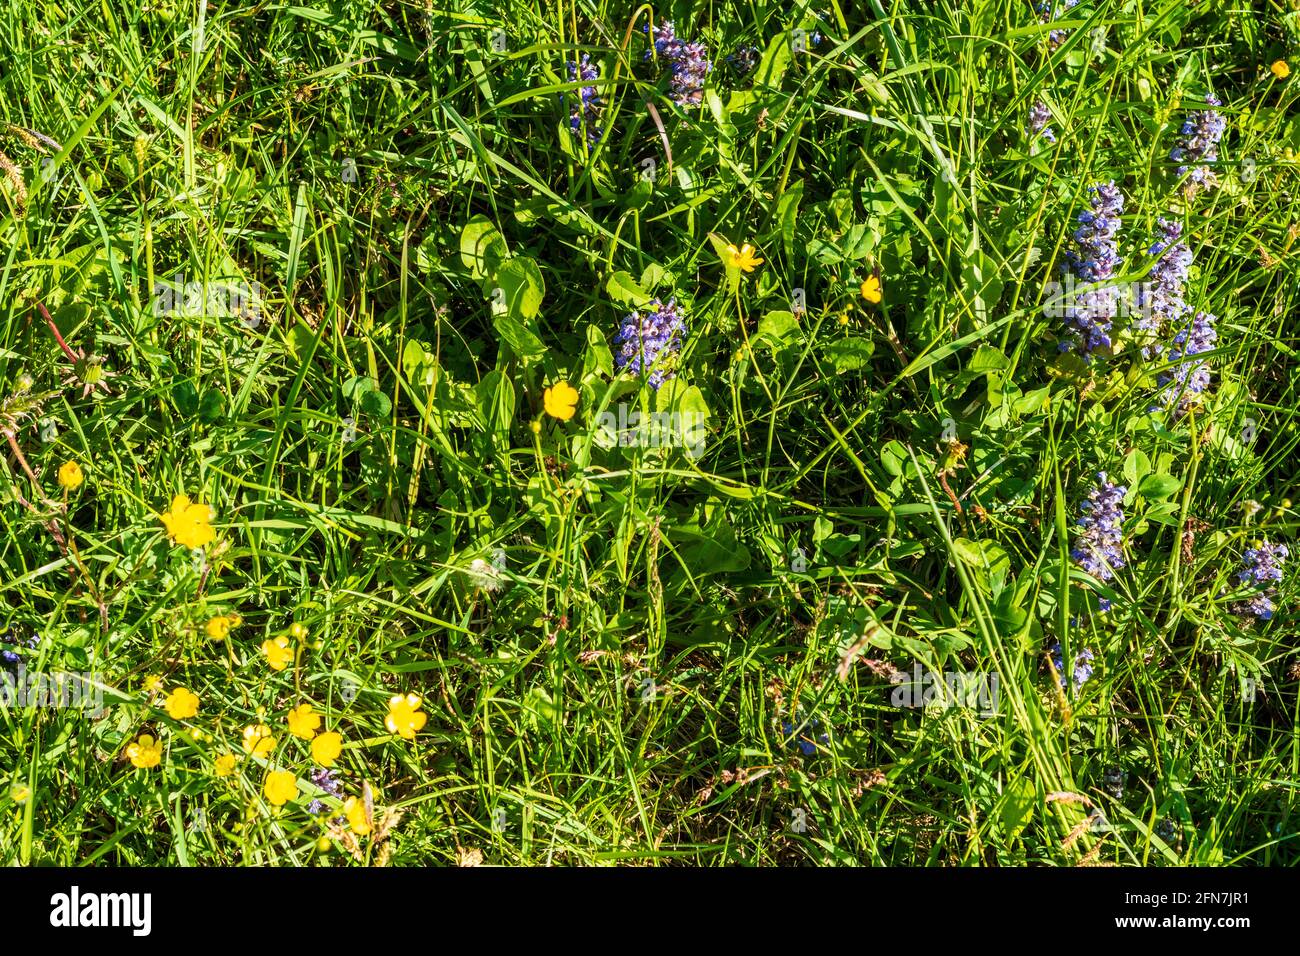 Waidhofen an der Ybbs: flowers Kriechender Günsel (Ajuga reptans) and Scharfer Hahnenfuß (Ranunculus acris) at meadow in Mostviertel, Niederösterreich Stock Photo